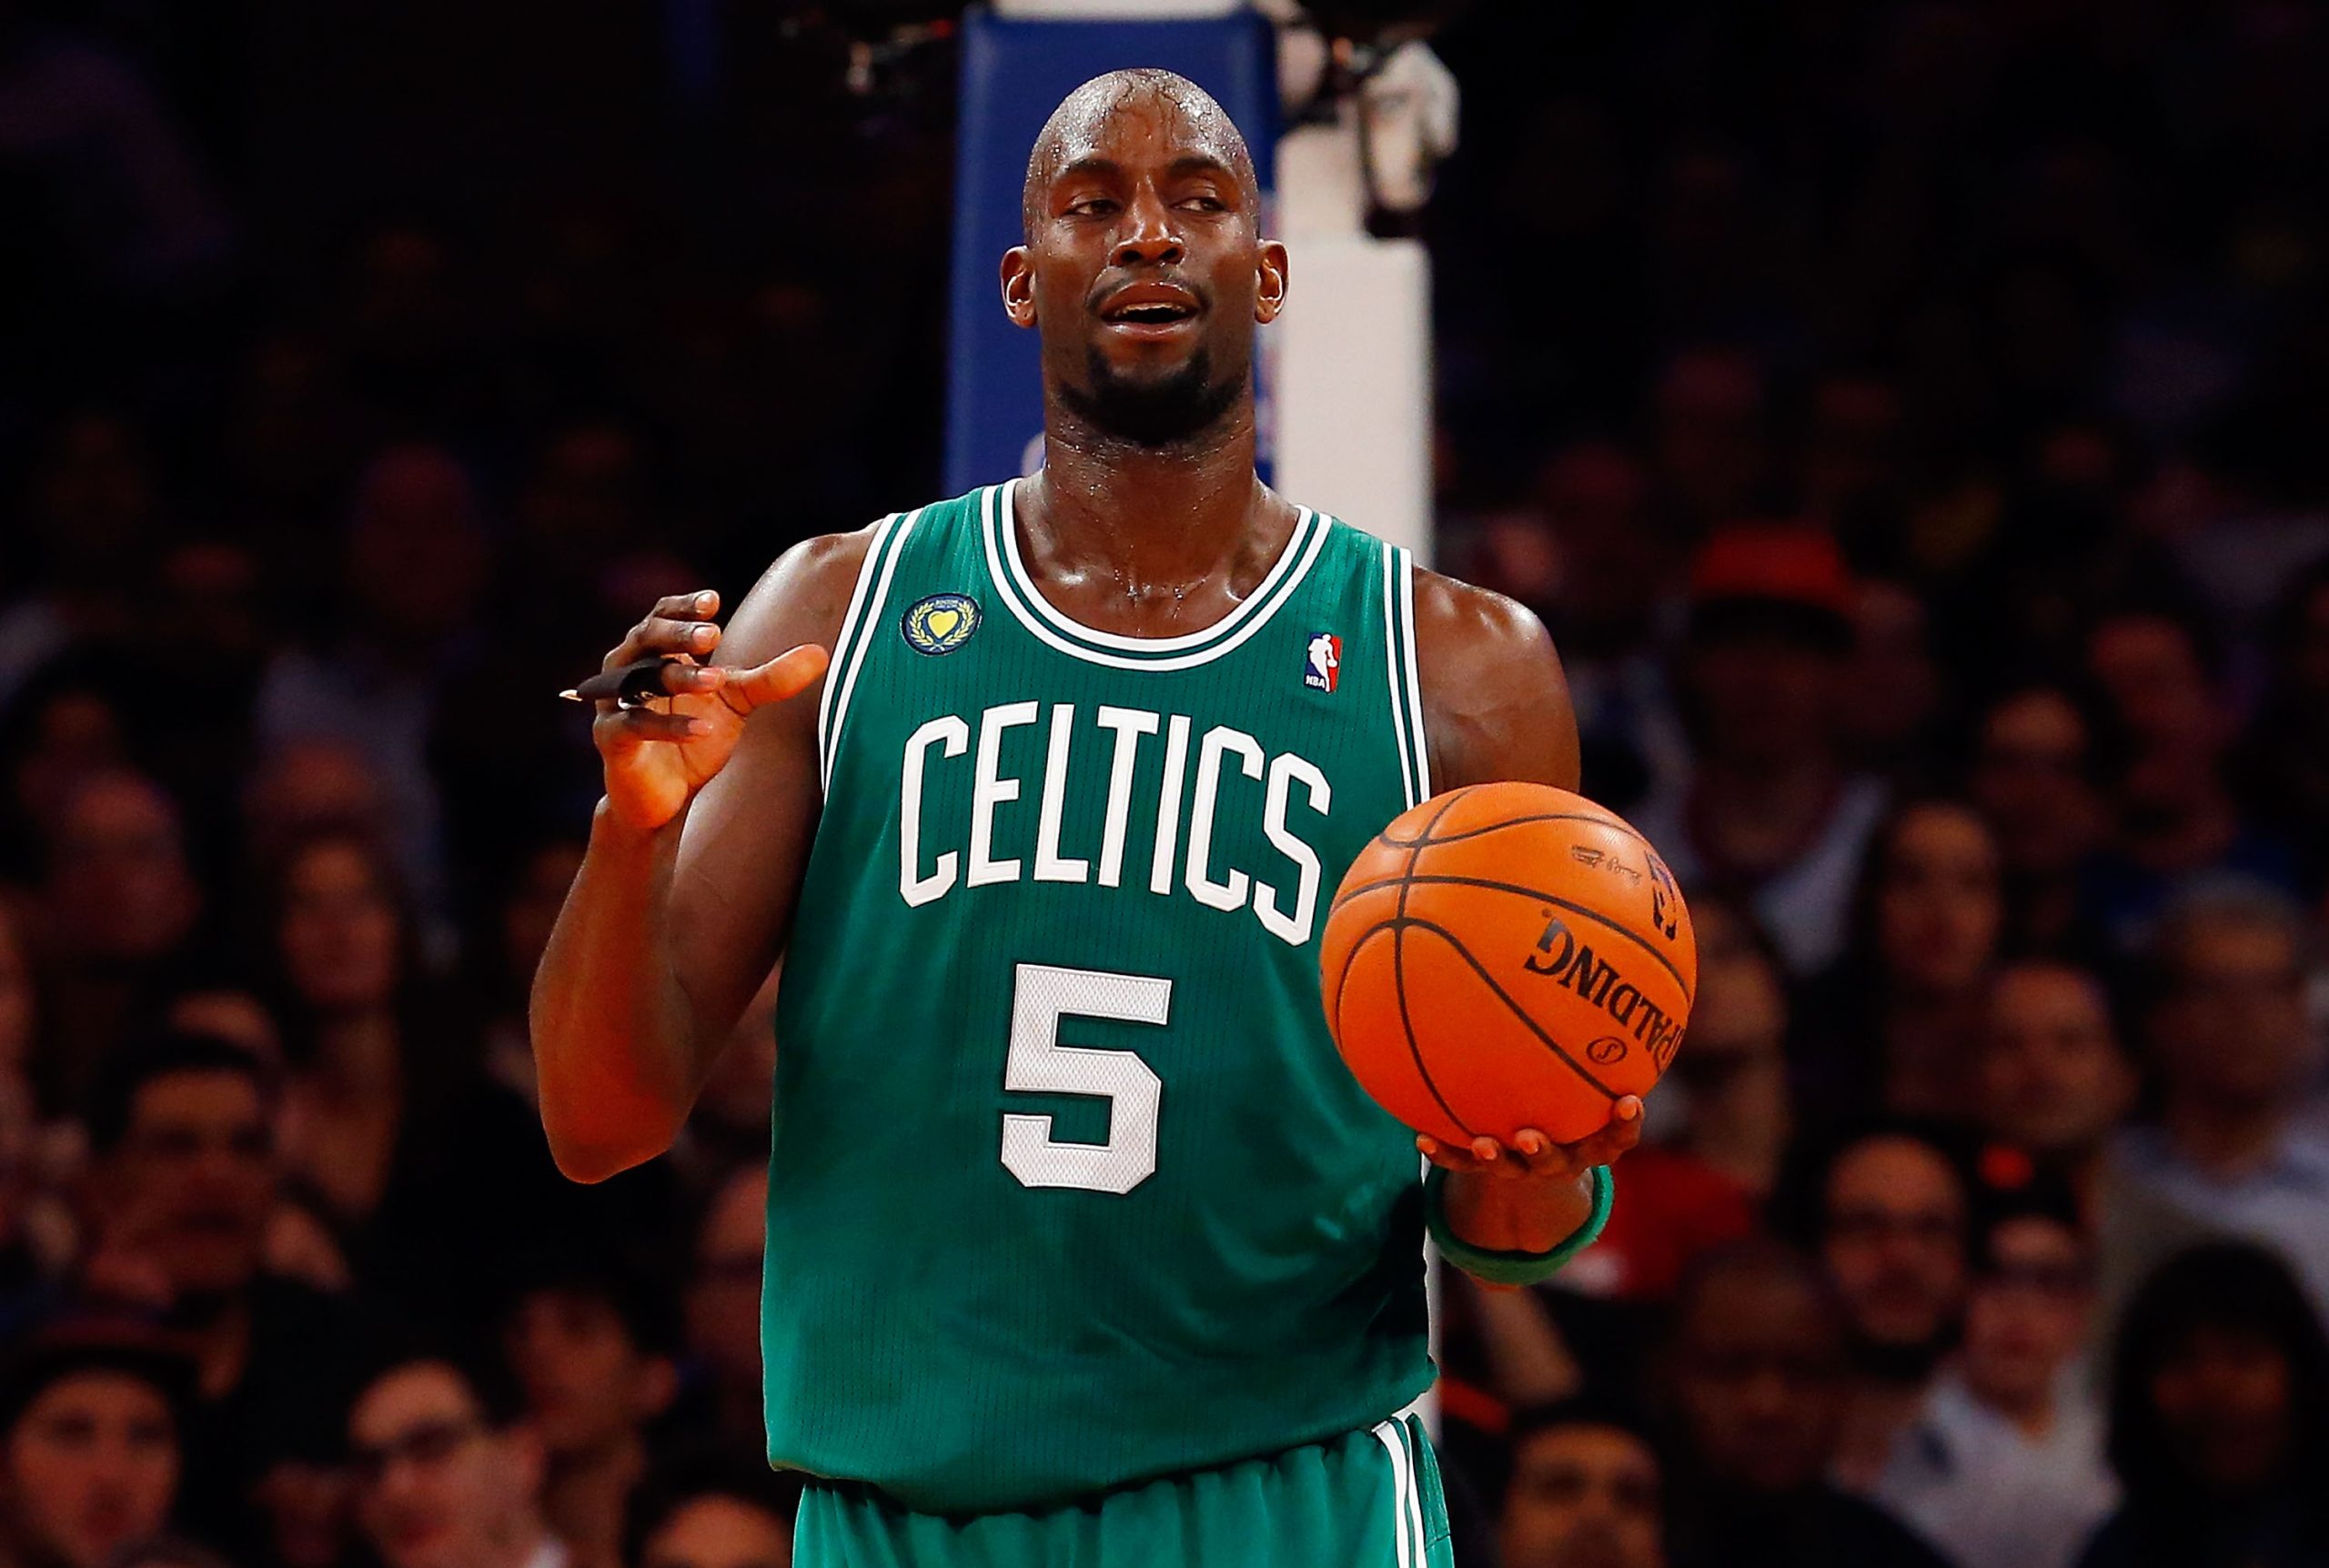 Kevin Garnett of the Boston Celtics in action against the New York Knicks.